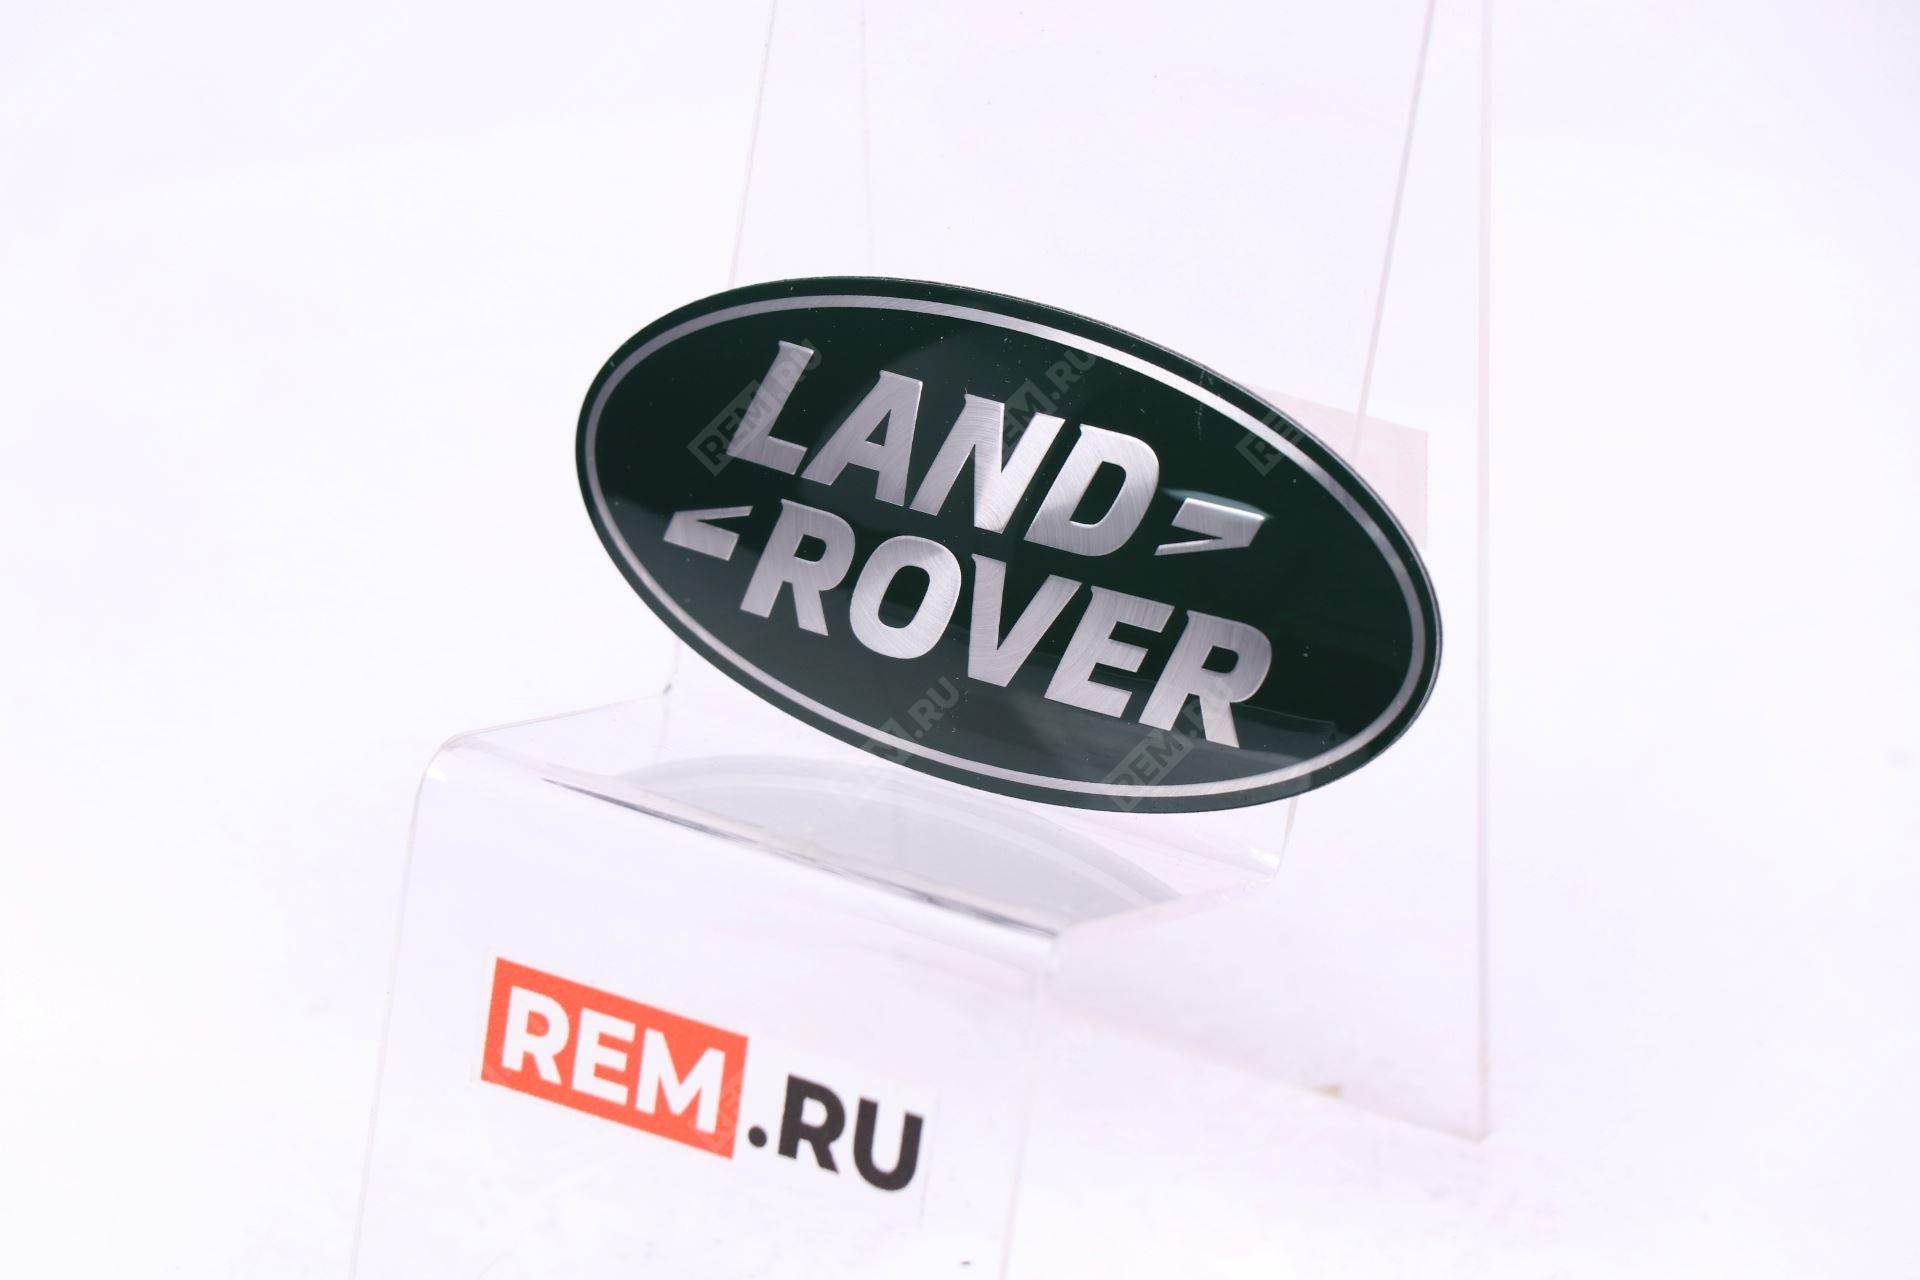  LR053190 эмблема решетки радиатора "land rover"